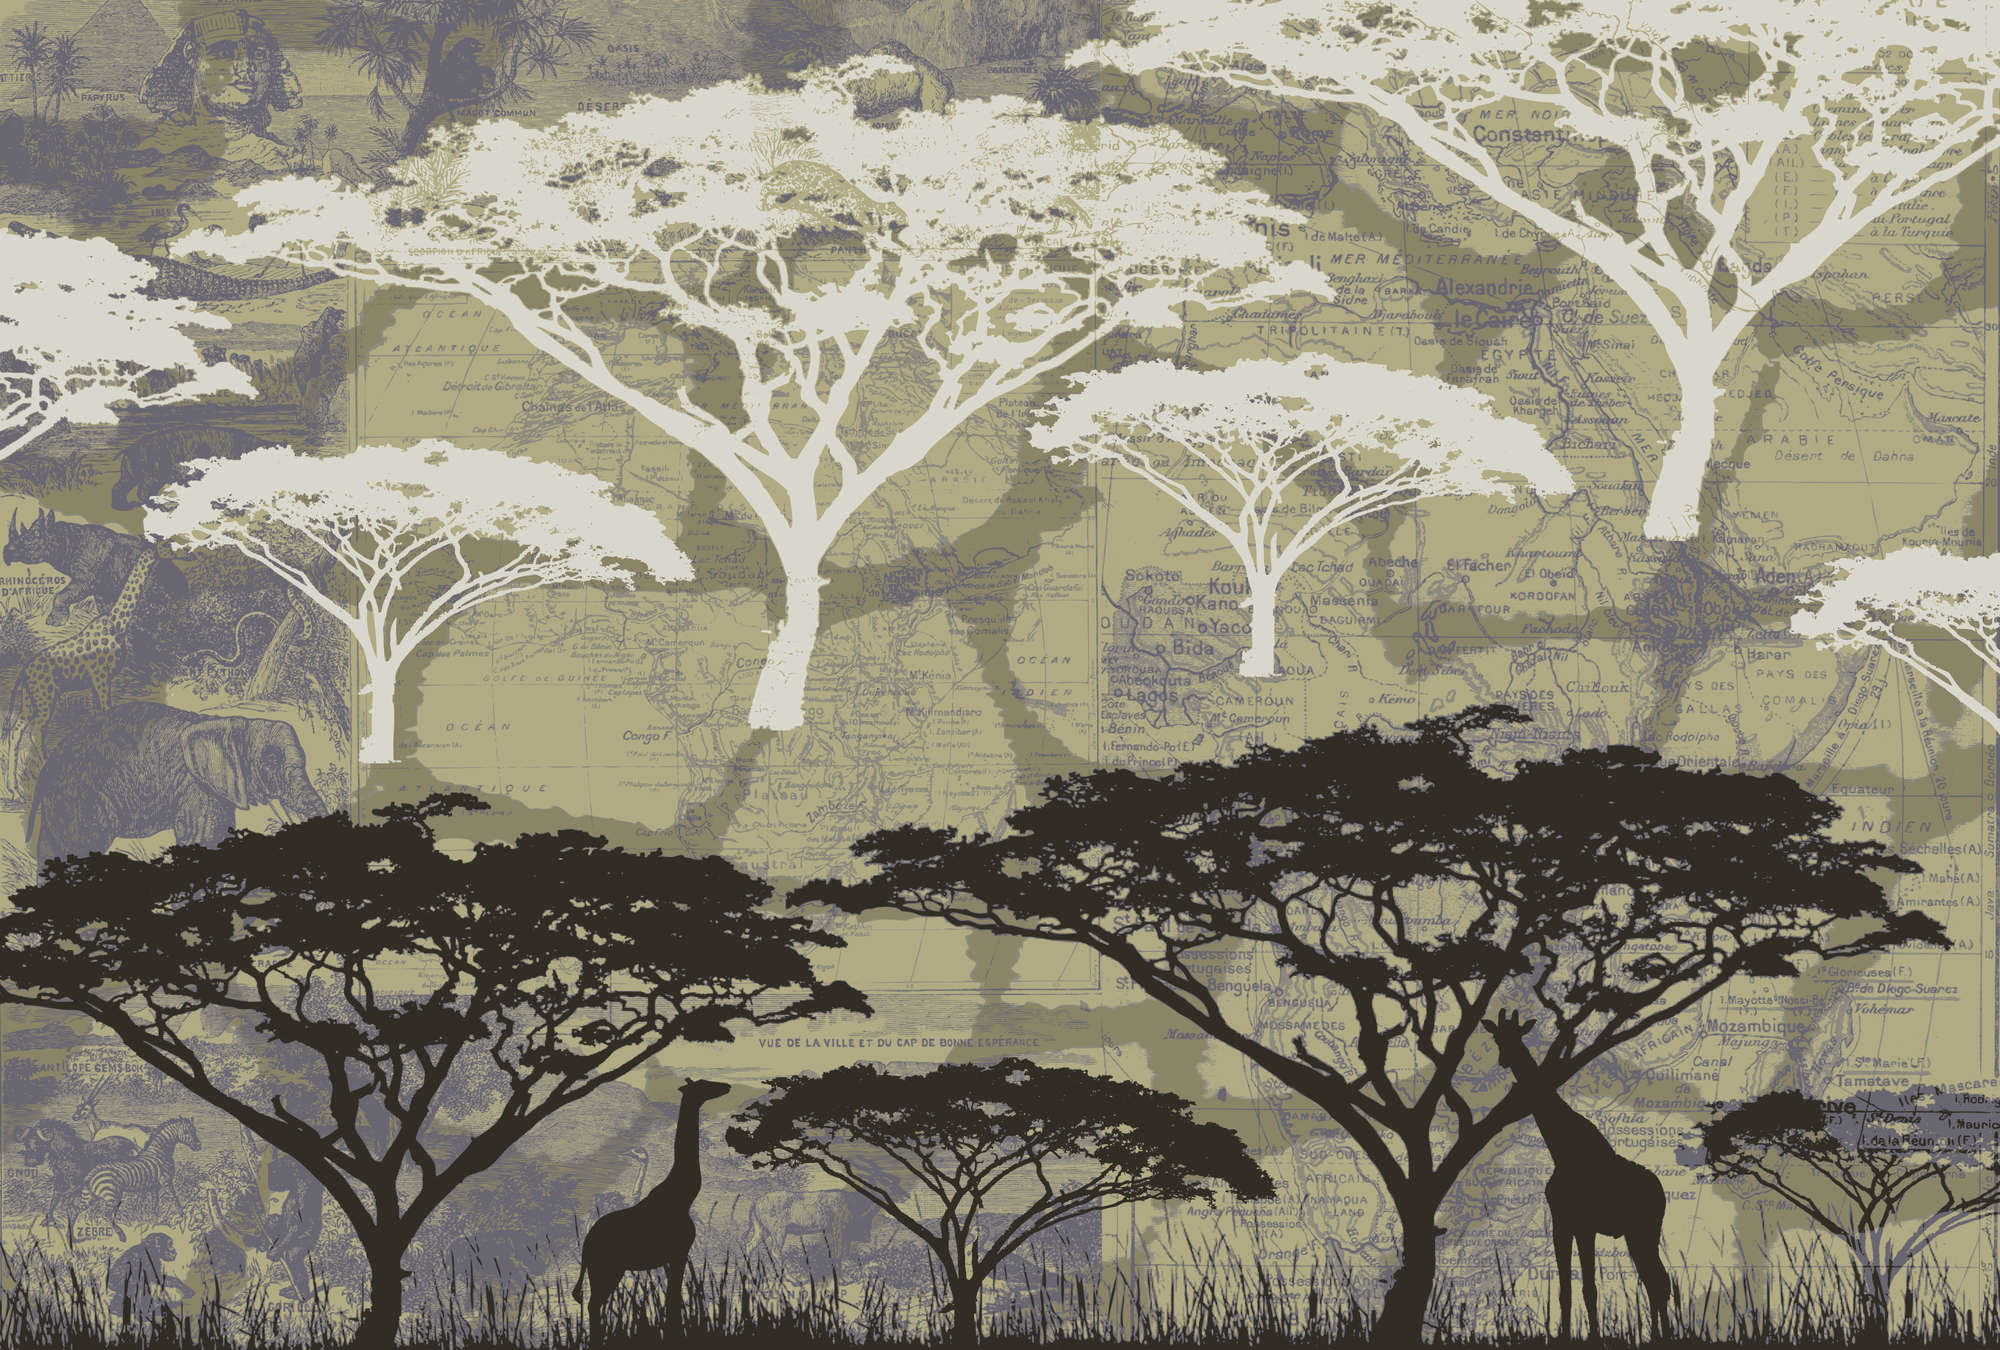             Savanne – Fototapete mit Baummotiv im African Stil
        